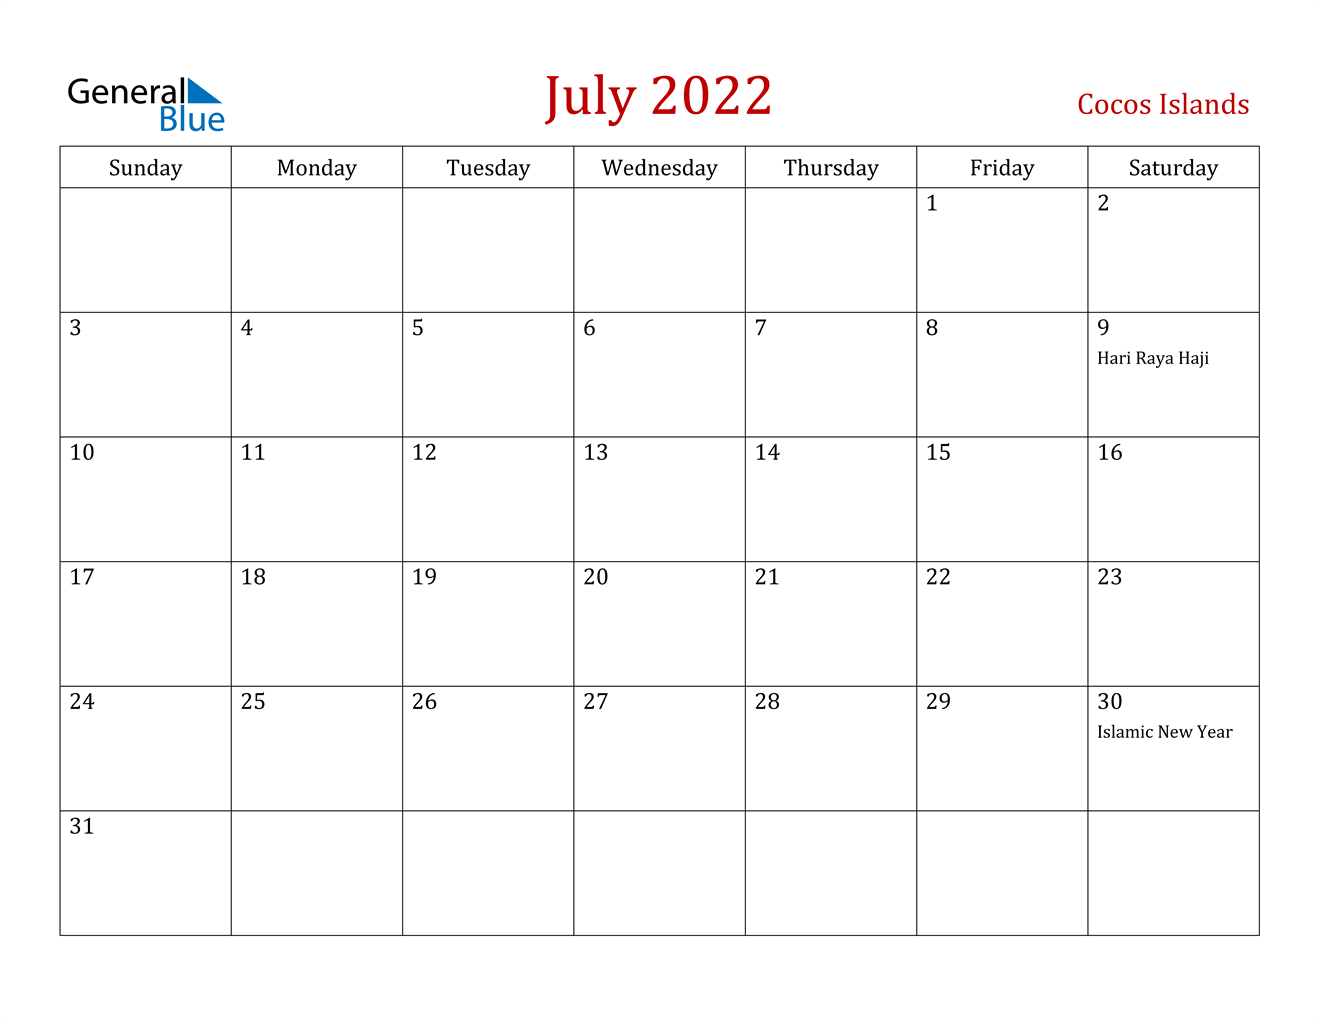 July 2022 Calendar - Cocos Islands